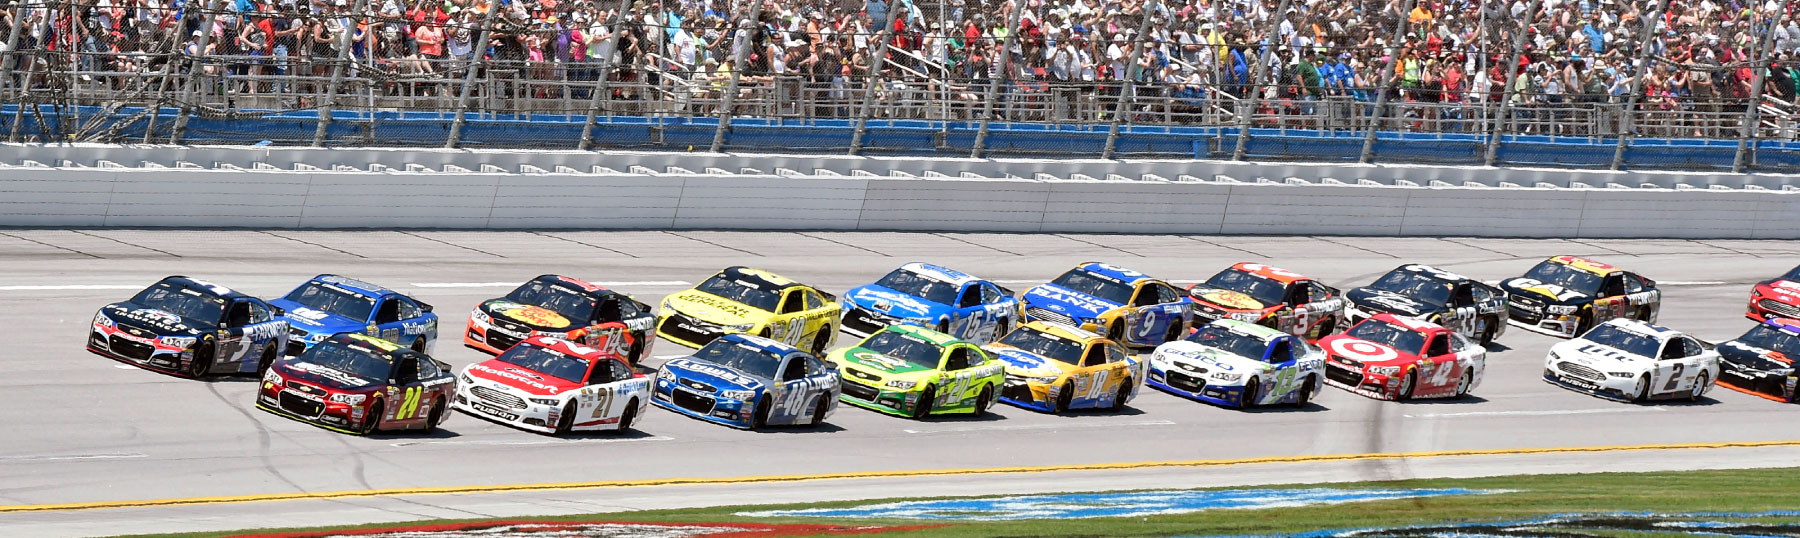 NASCAR cars on racetrack awaiting green flag